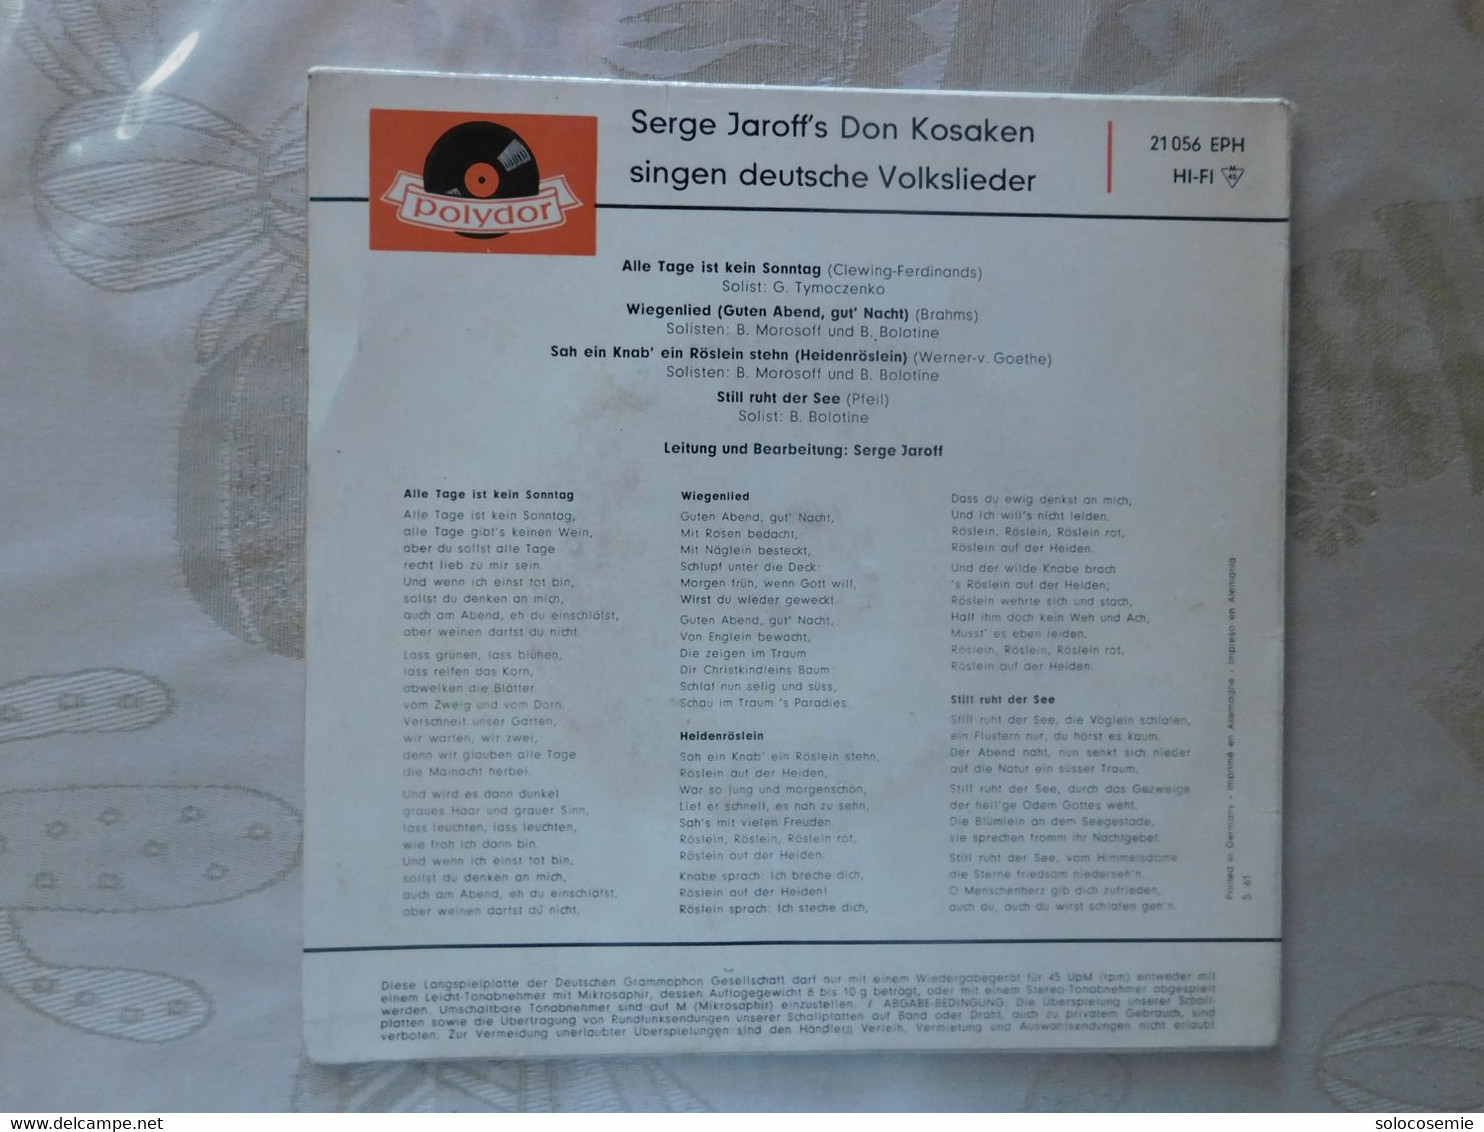 45 Giri Disco In Vinile: Serge Jaroff's Don Kosaken Singen Deutsche Volksilieder  - Polydor  21056 EPH - Sonstige - Deutsche Musik